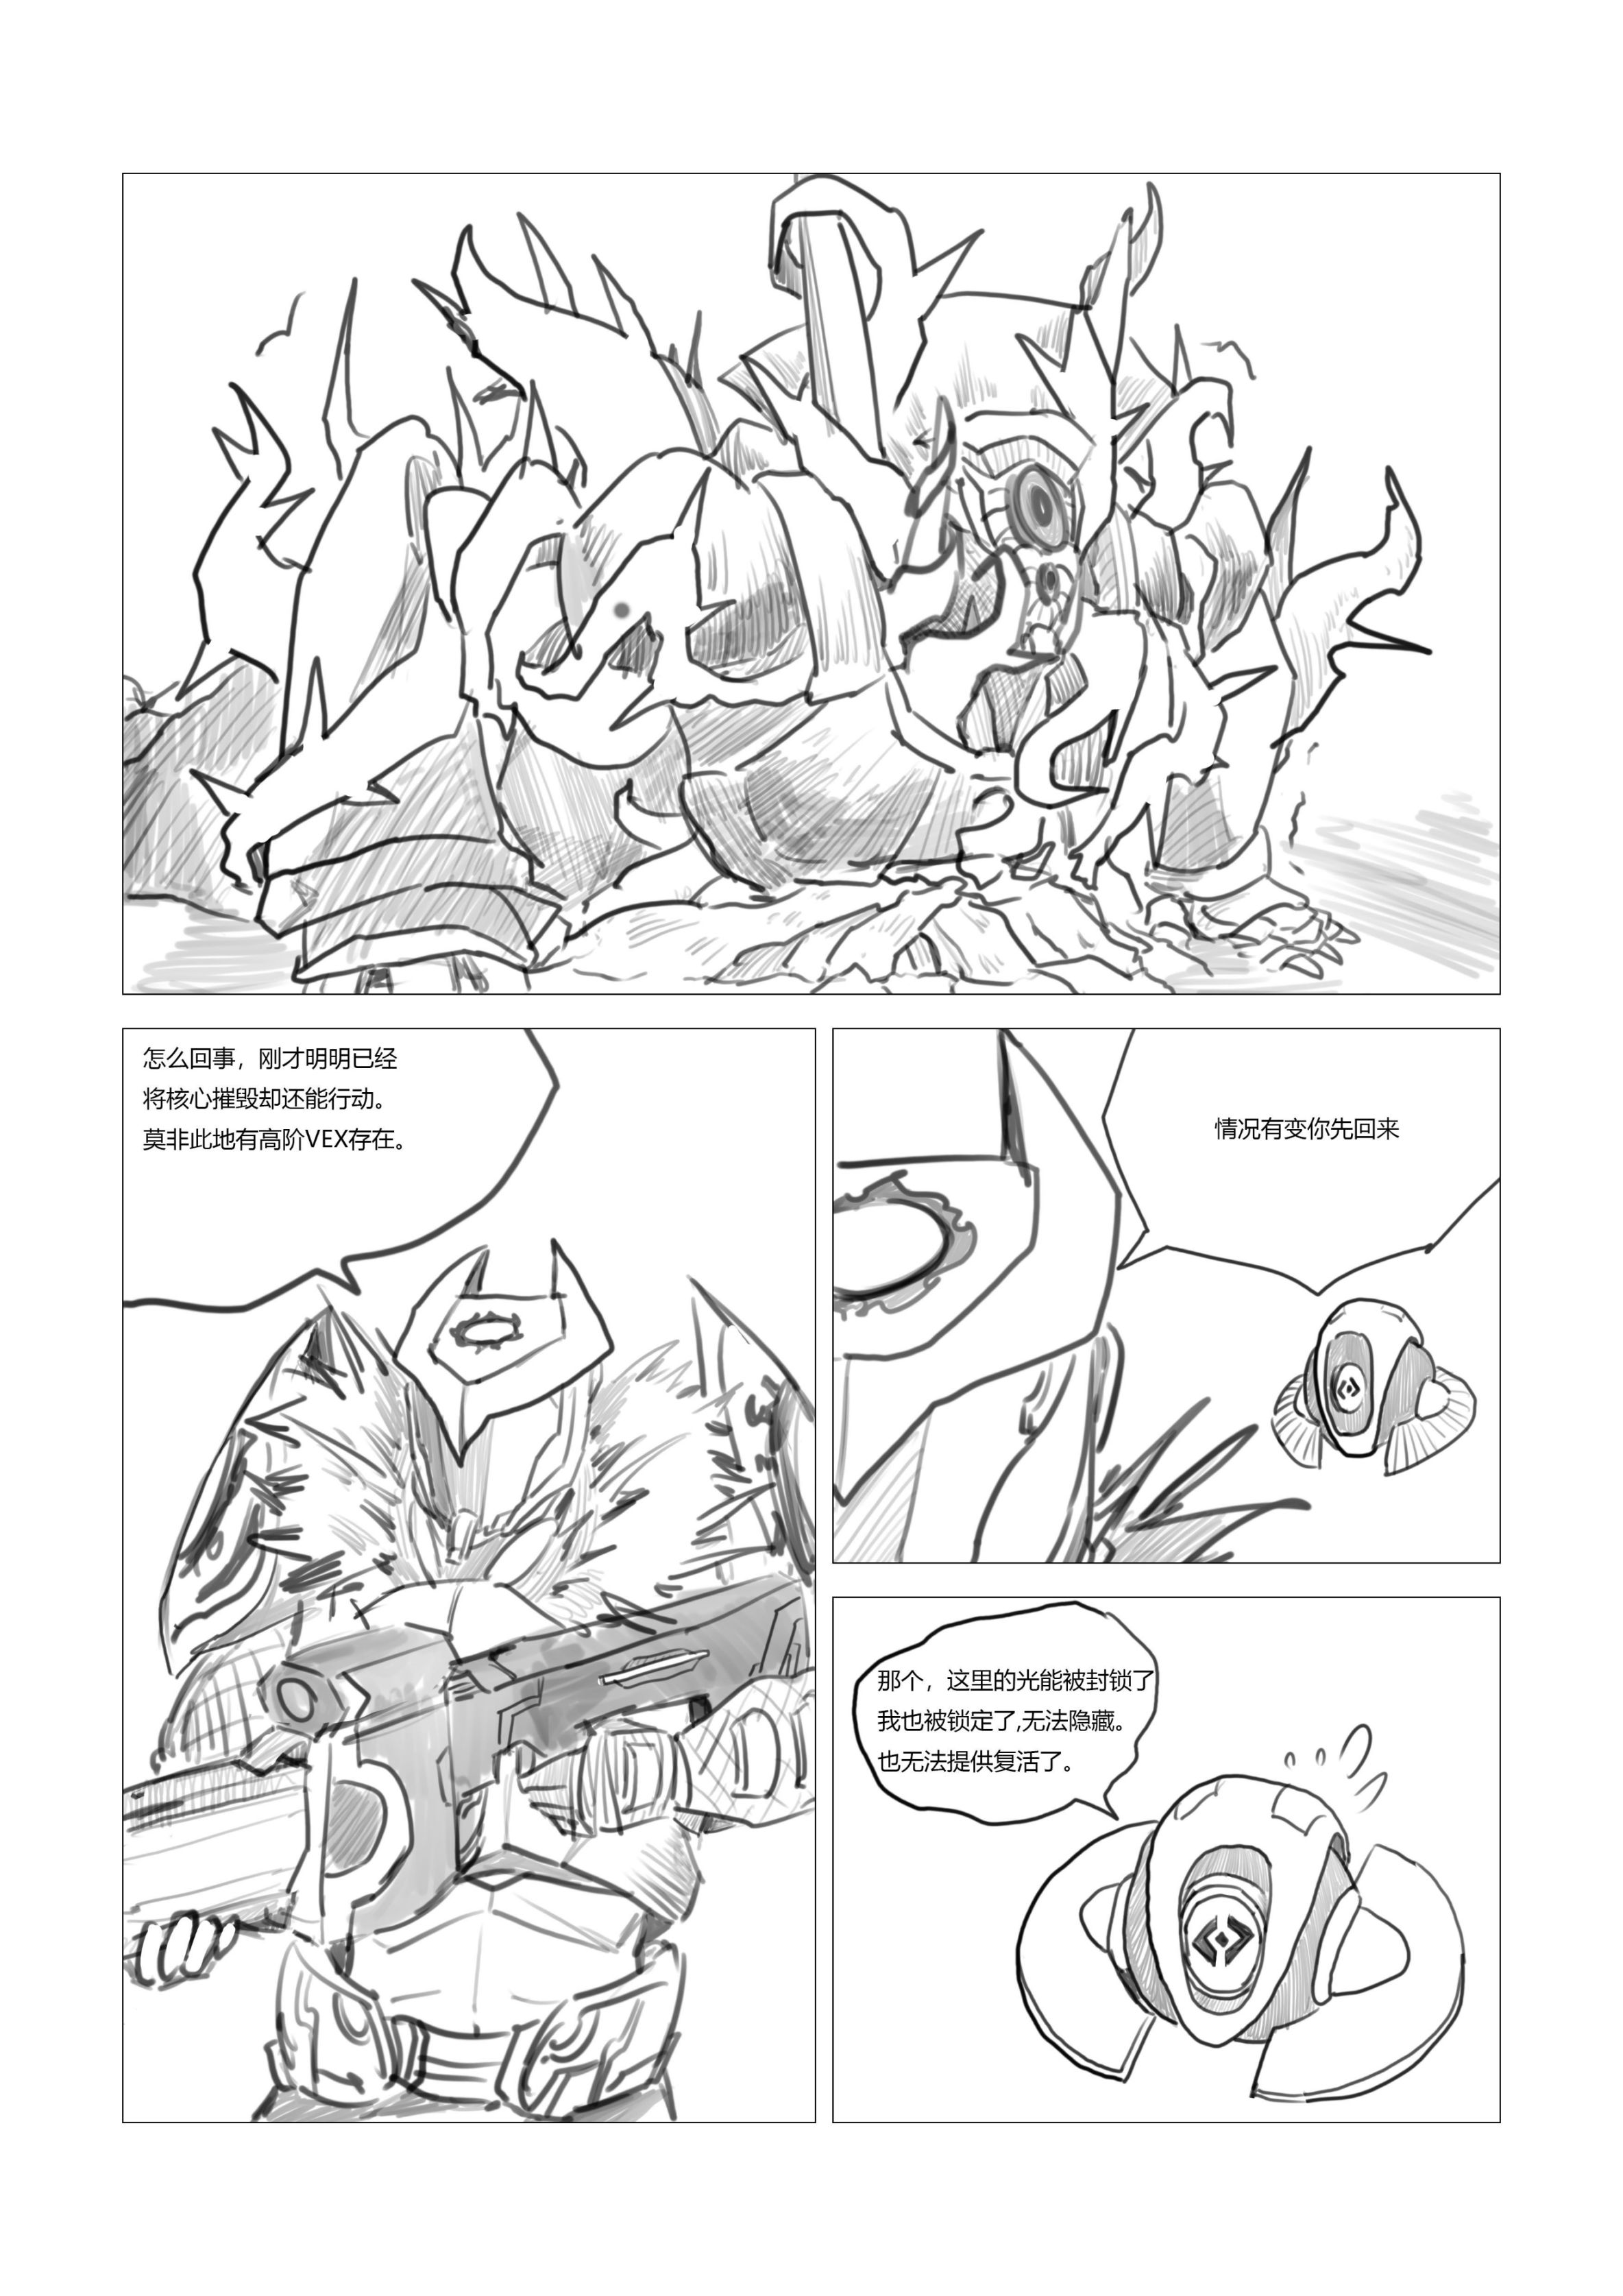 命运2原创战斗漫画（不止于战斗）28页-第4张